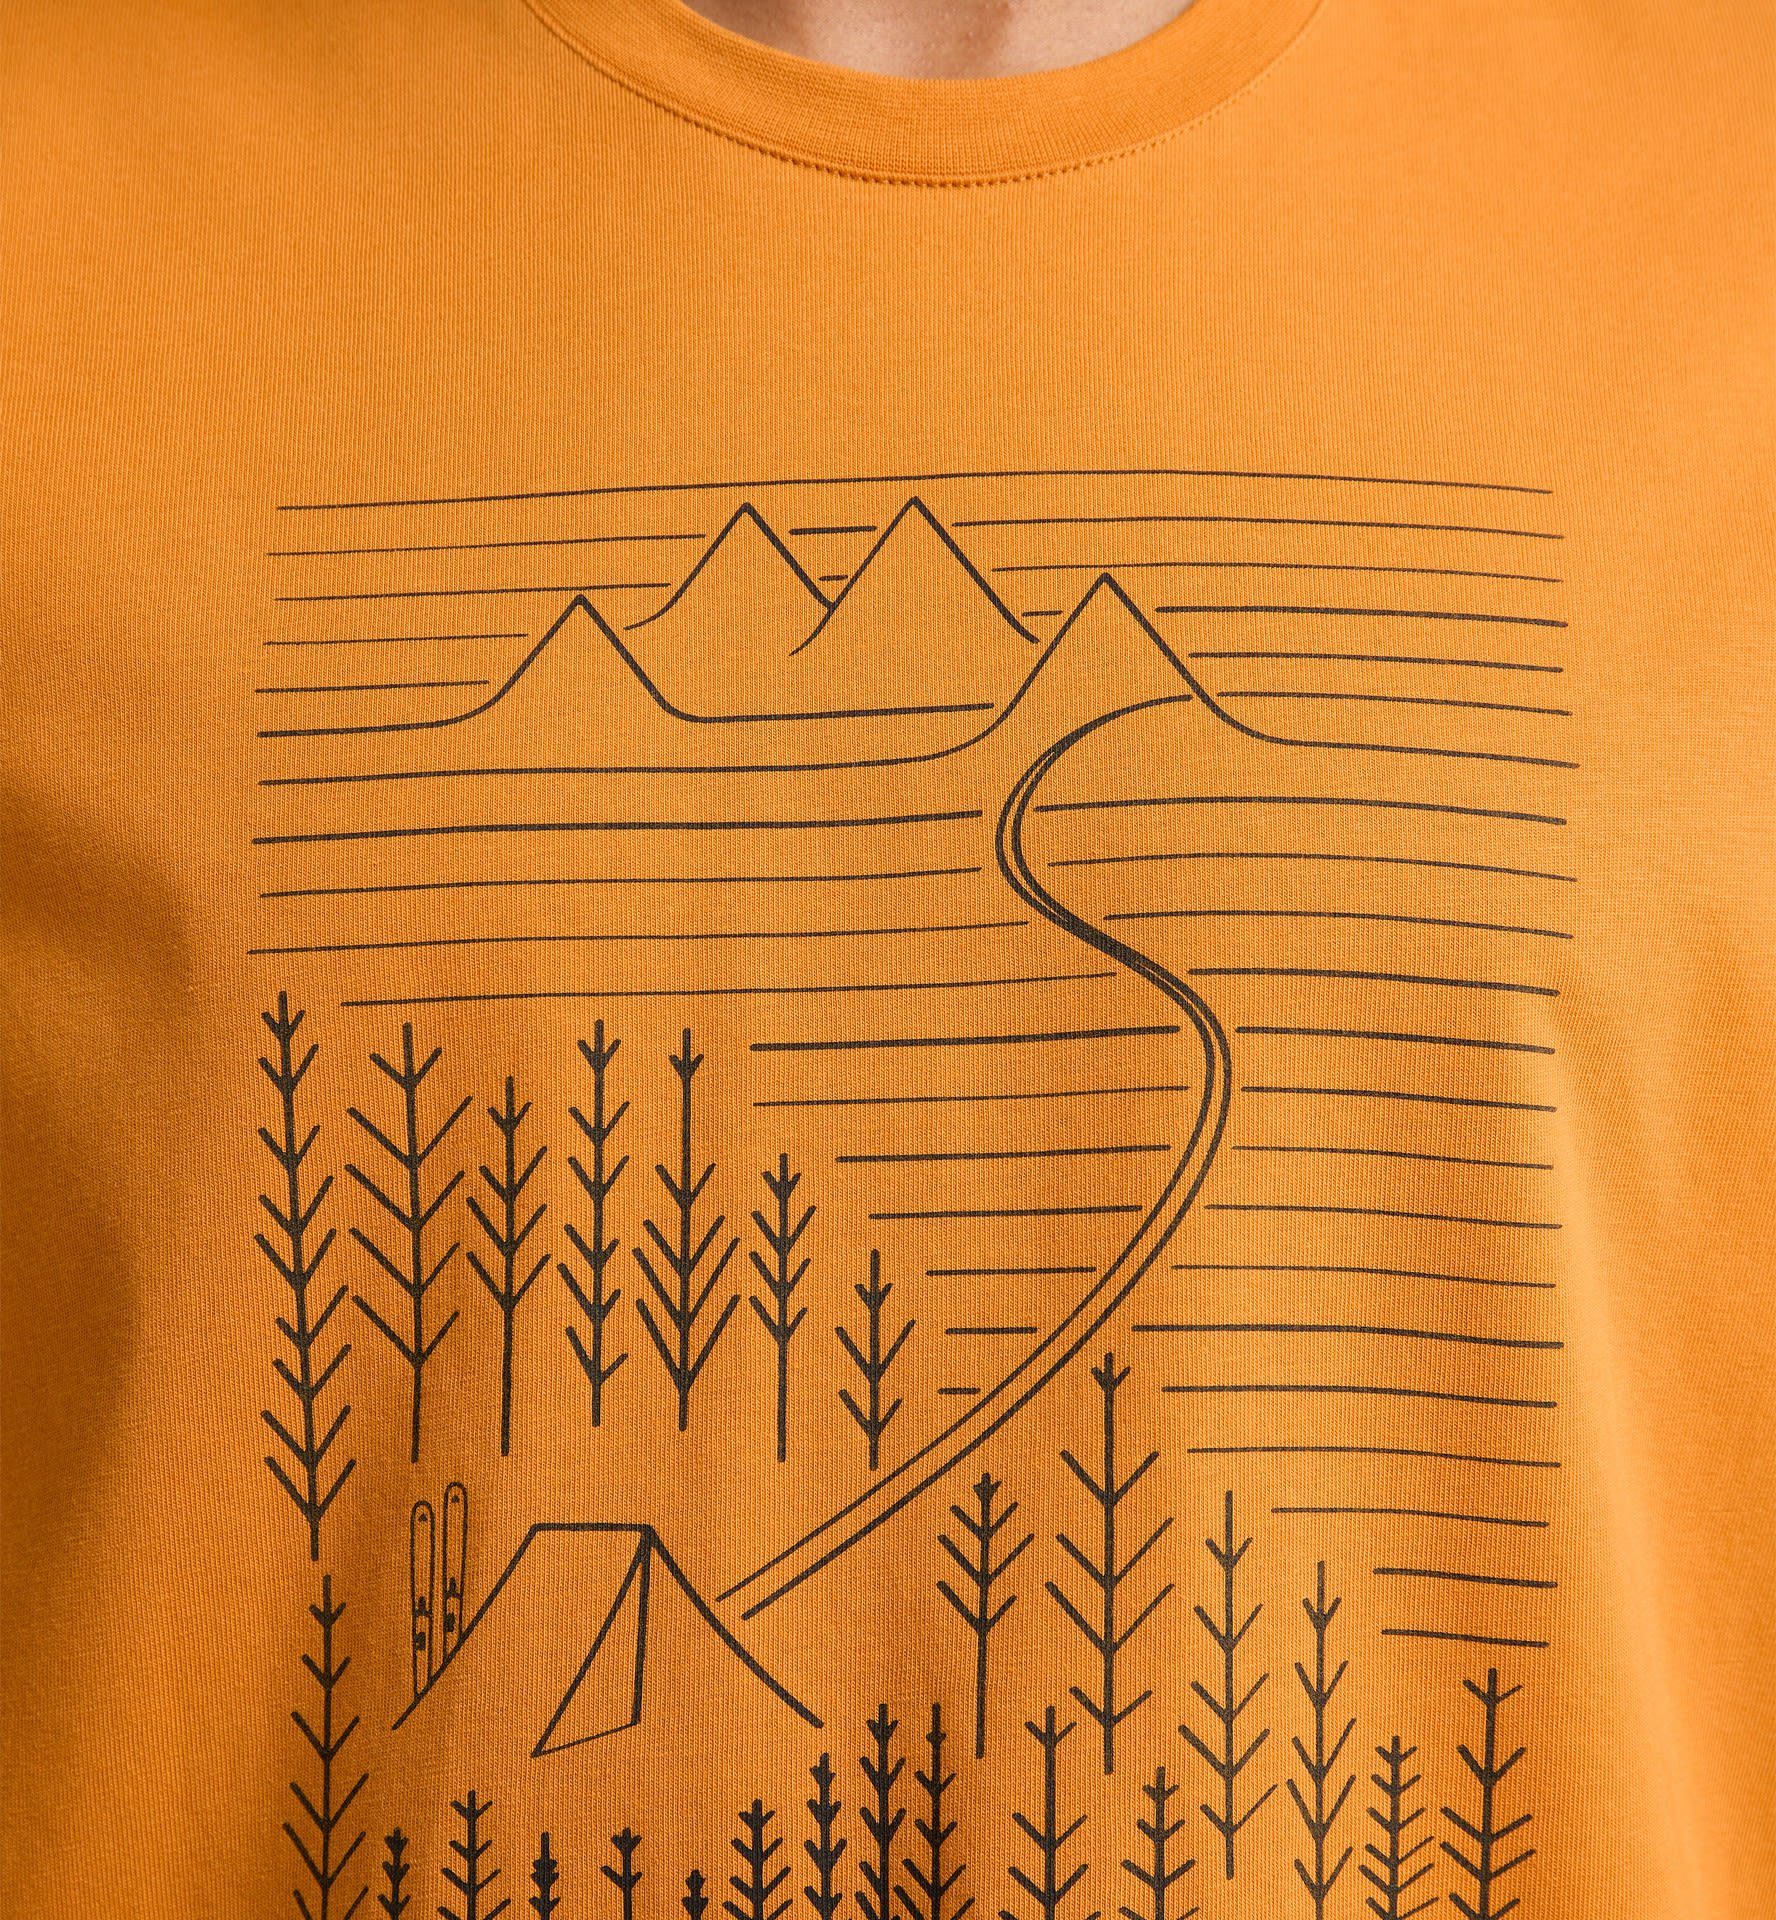 Kurzarm-Shirt Haglöfs Tee Desert M Camp Yellow Herren Haglöfs T-Shirt